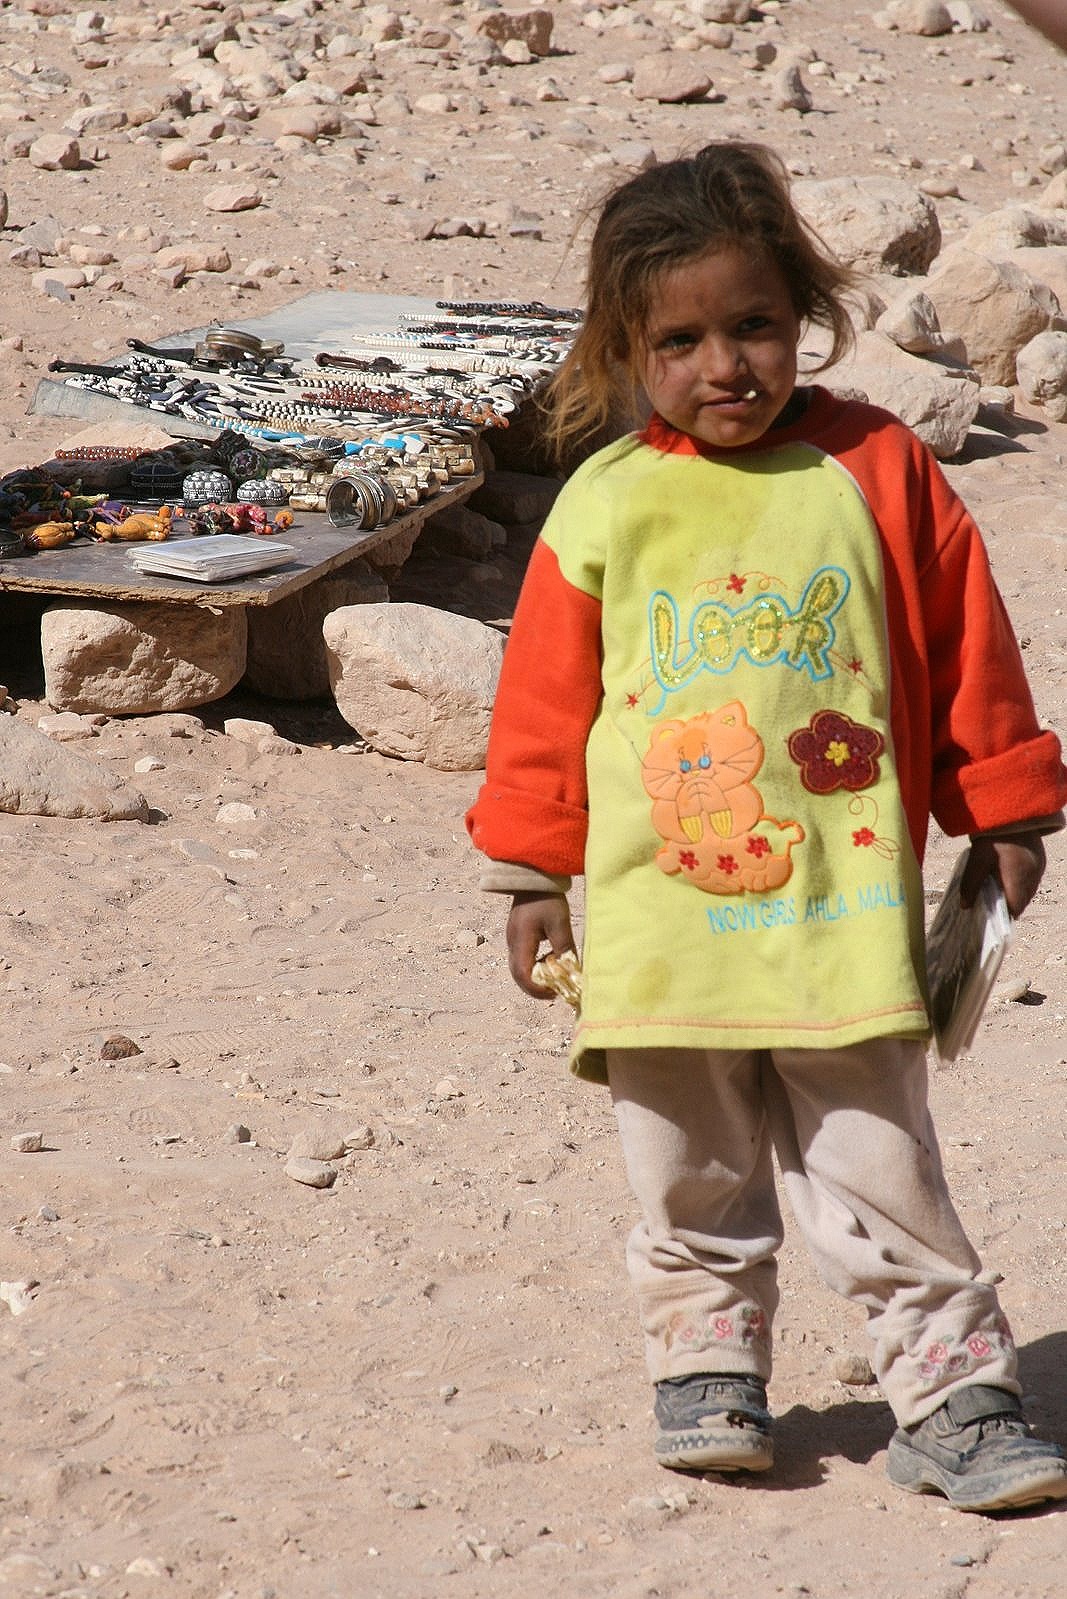 Child vendor at Petra, Jordan